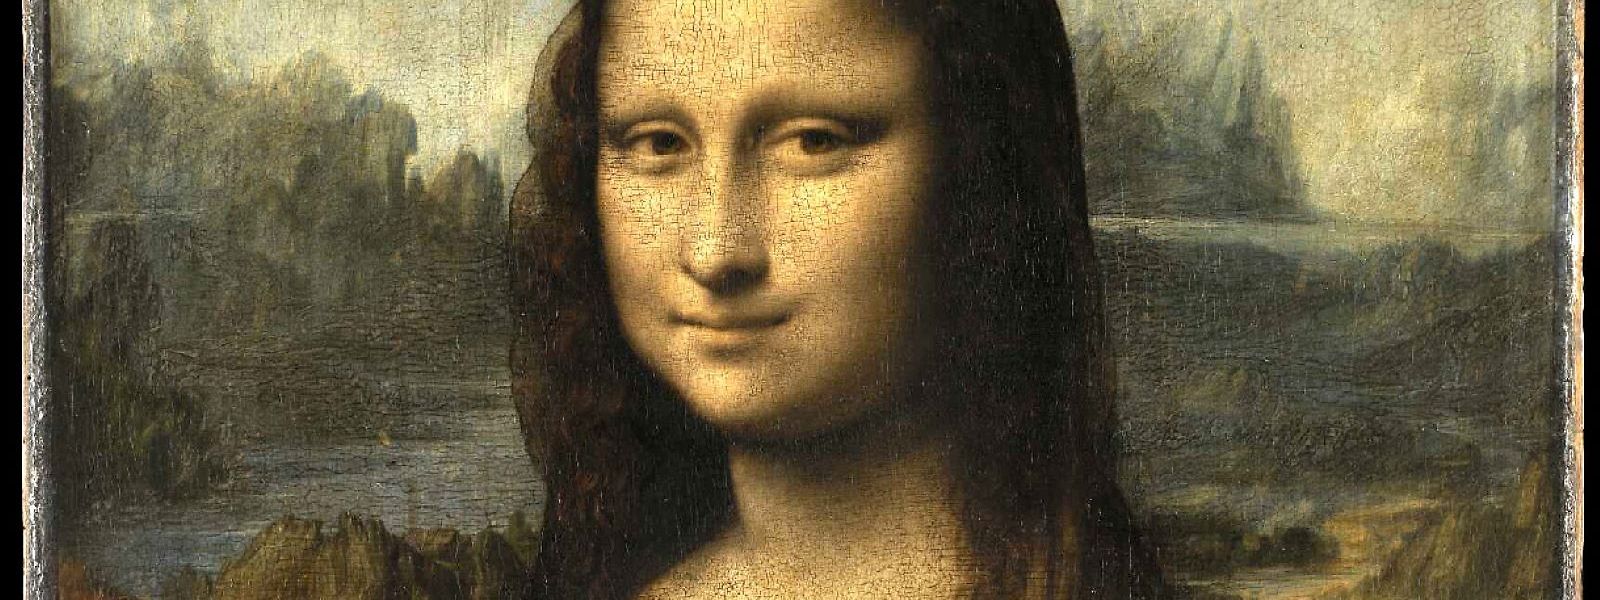 Leonardo da Vinci malte seine Mona Lisa um 1503-1506.